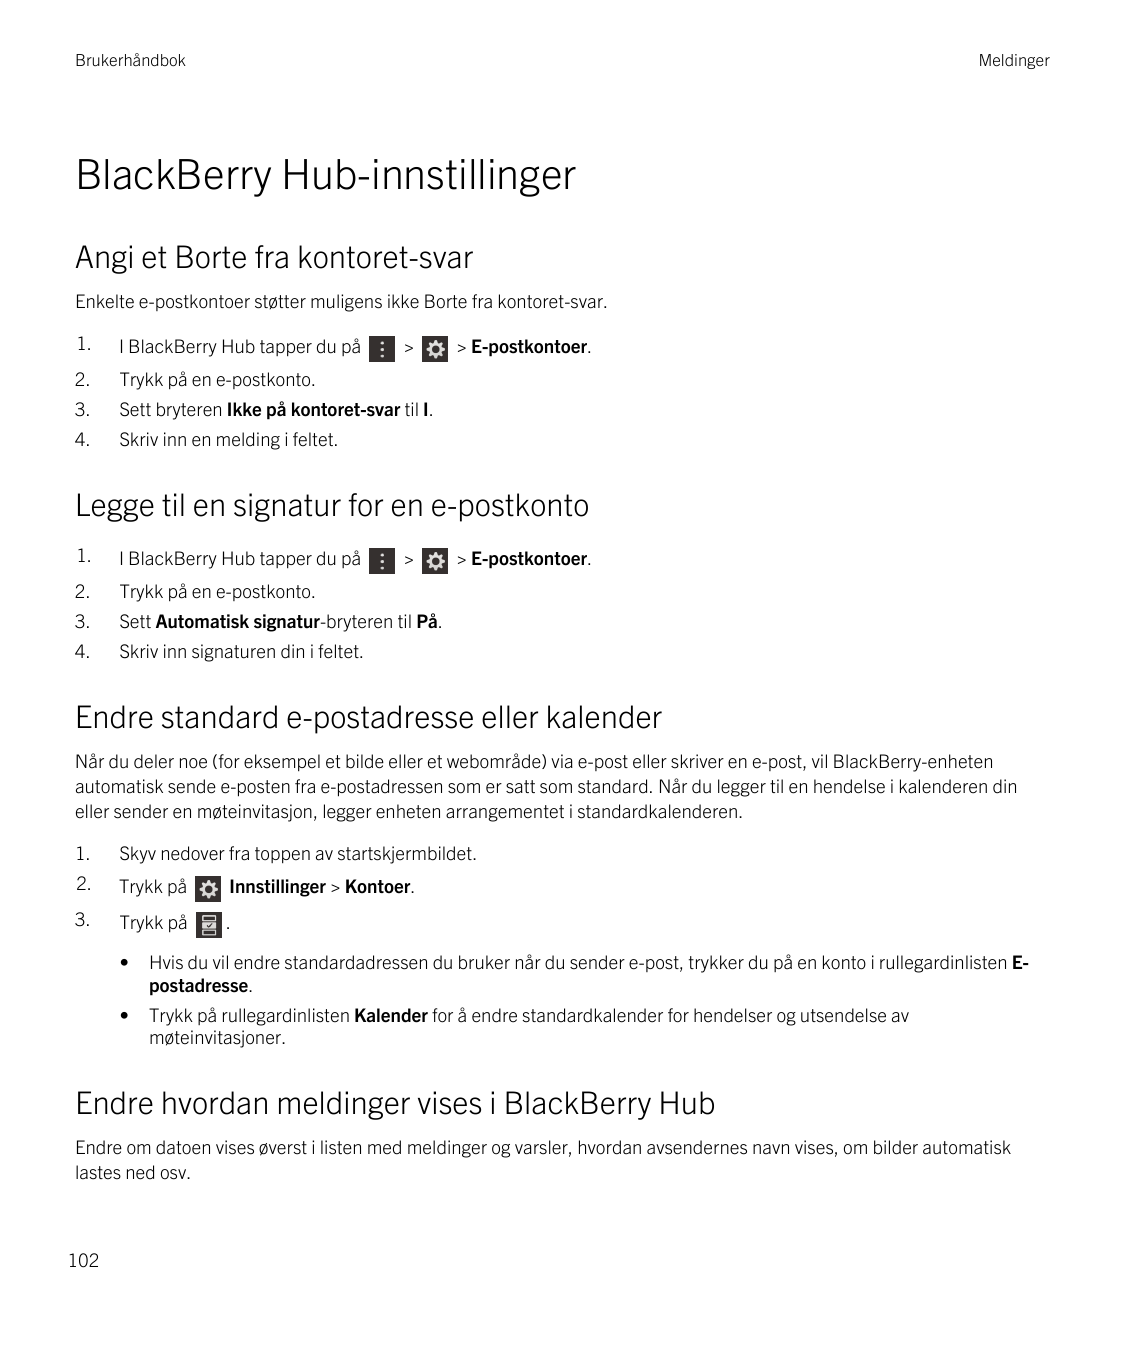 BrukerhåndbokMeldingerBlackBerry Hub-innstillingerAngi et Borte fra kontoret-svarEnkelte e-postkontoer støtter muligens ikke Bor